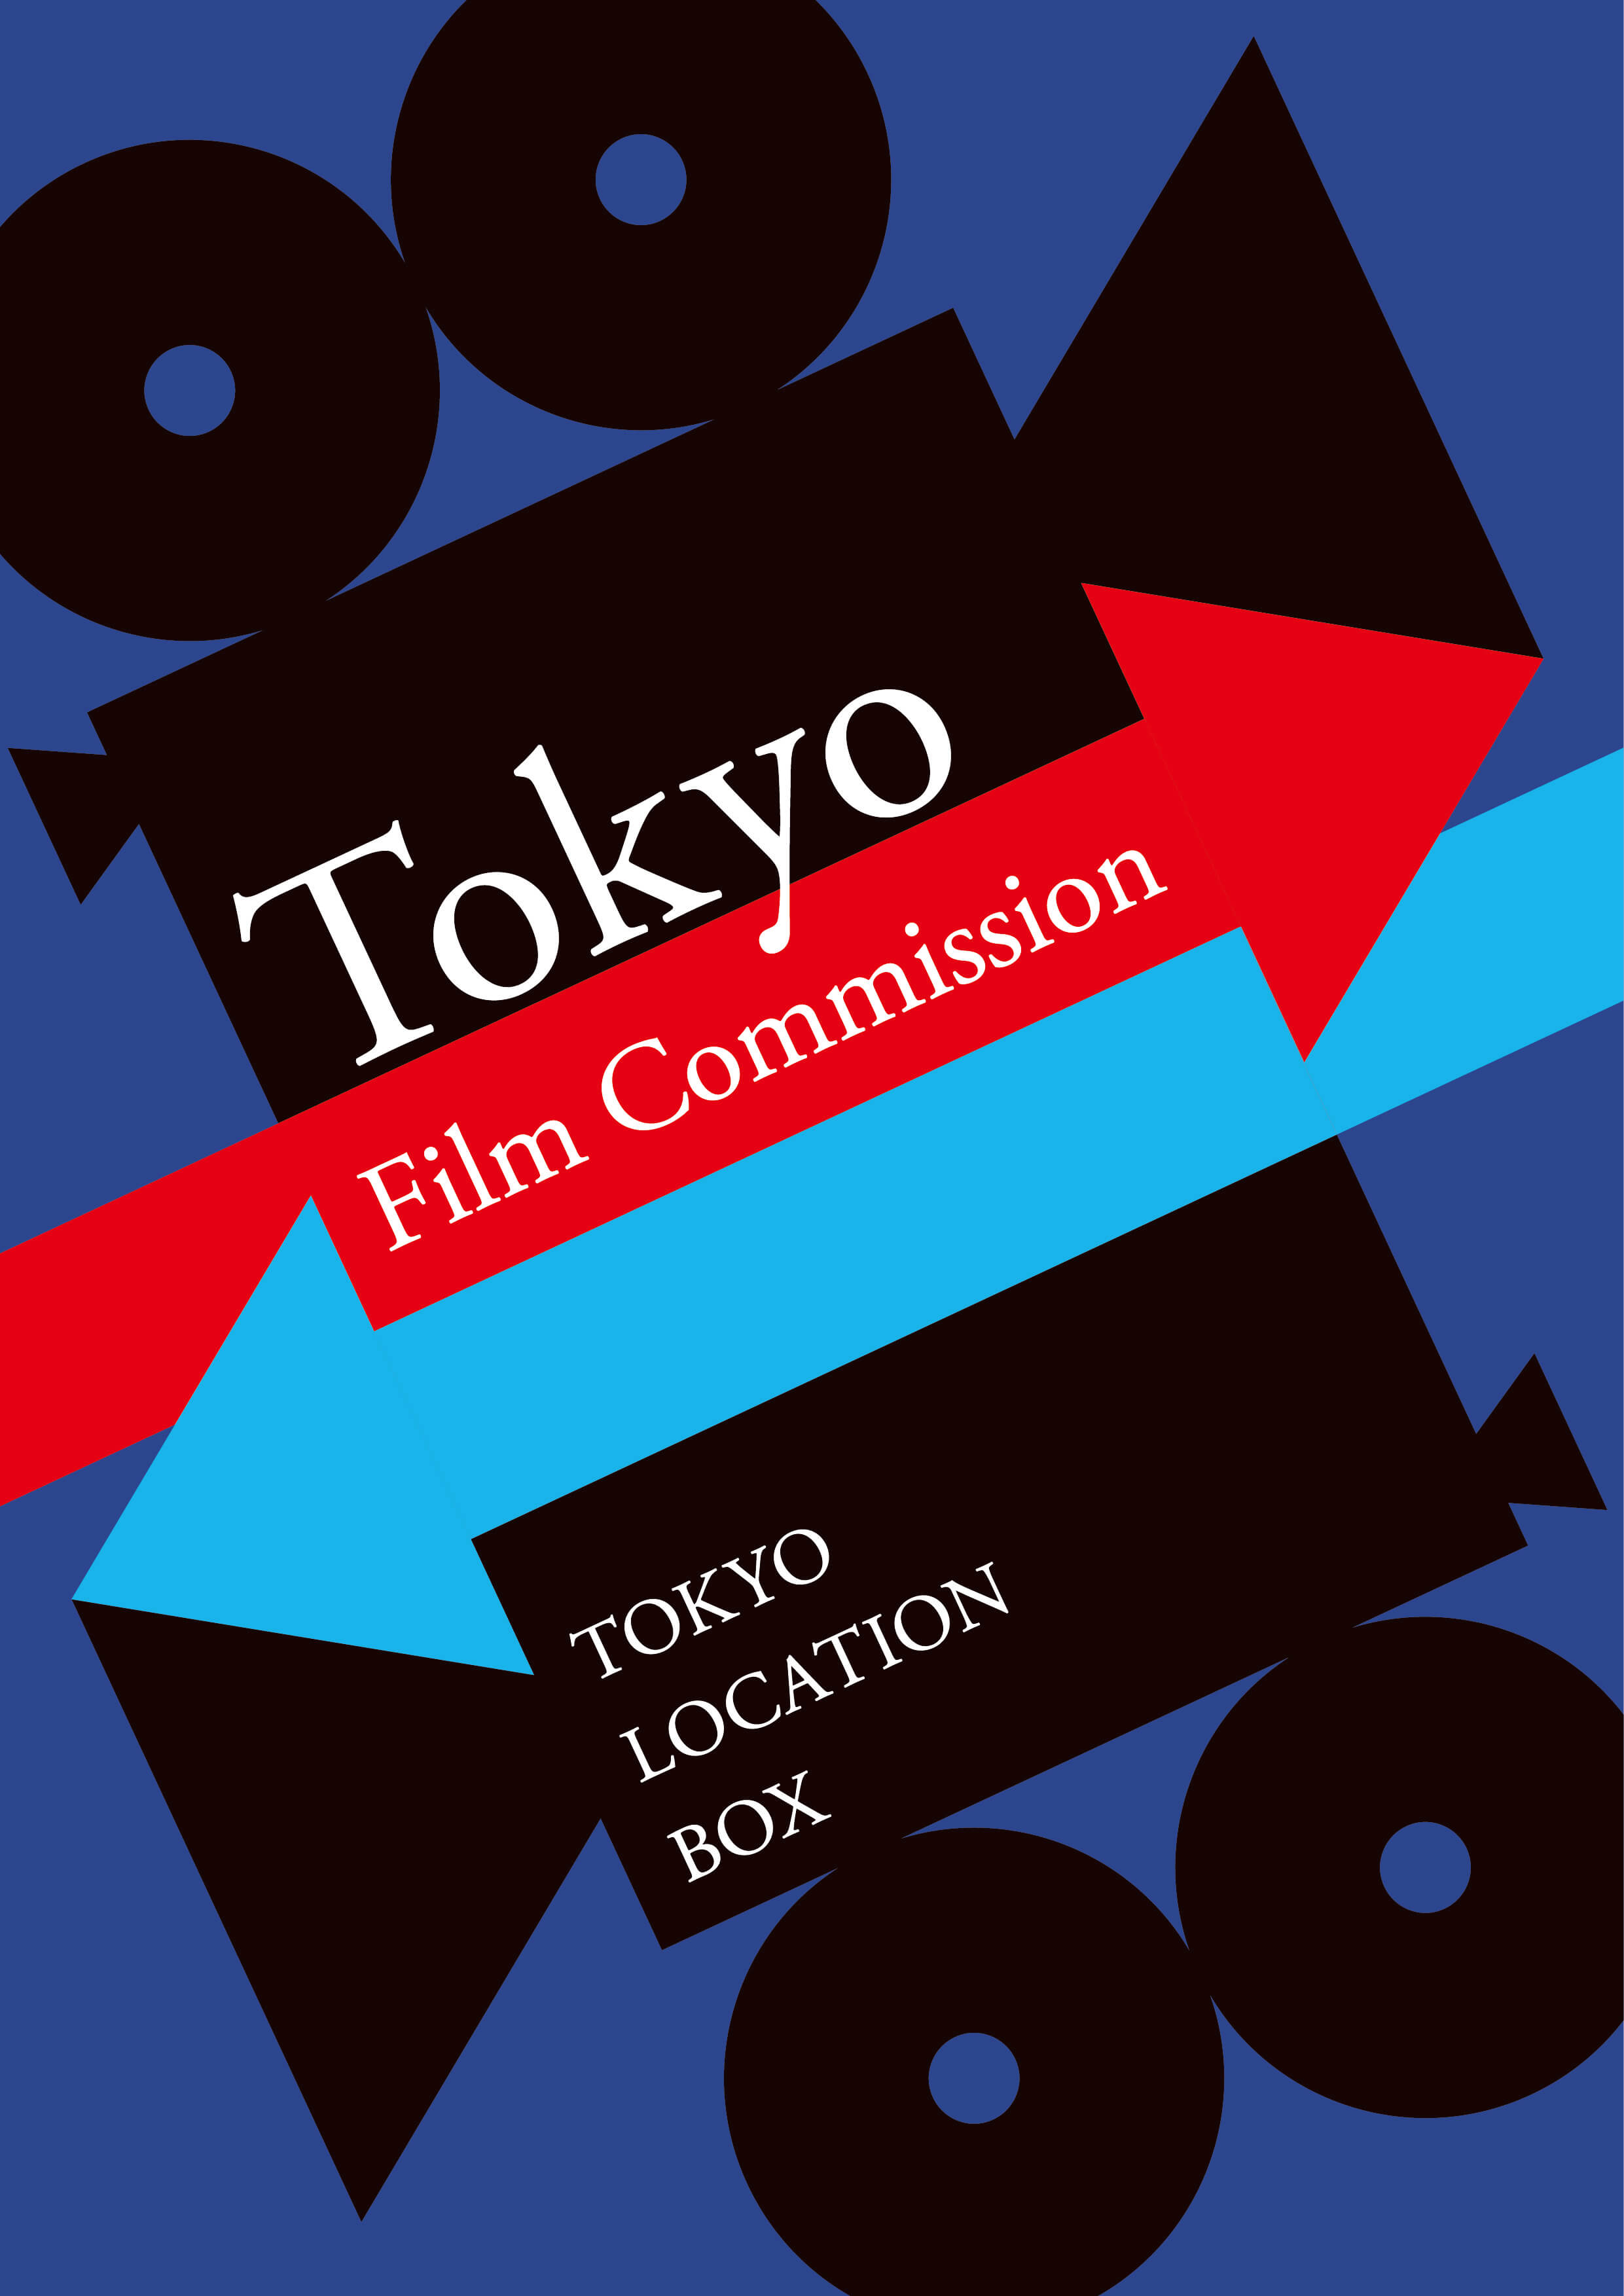 平成30年度 東京フィルムコミッション「東京ロケーションボックス」の事業紹介 